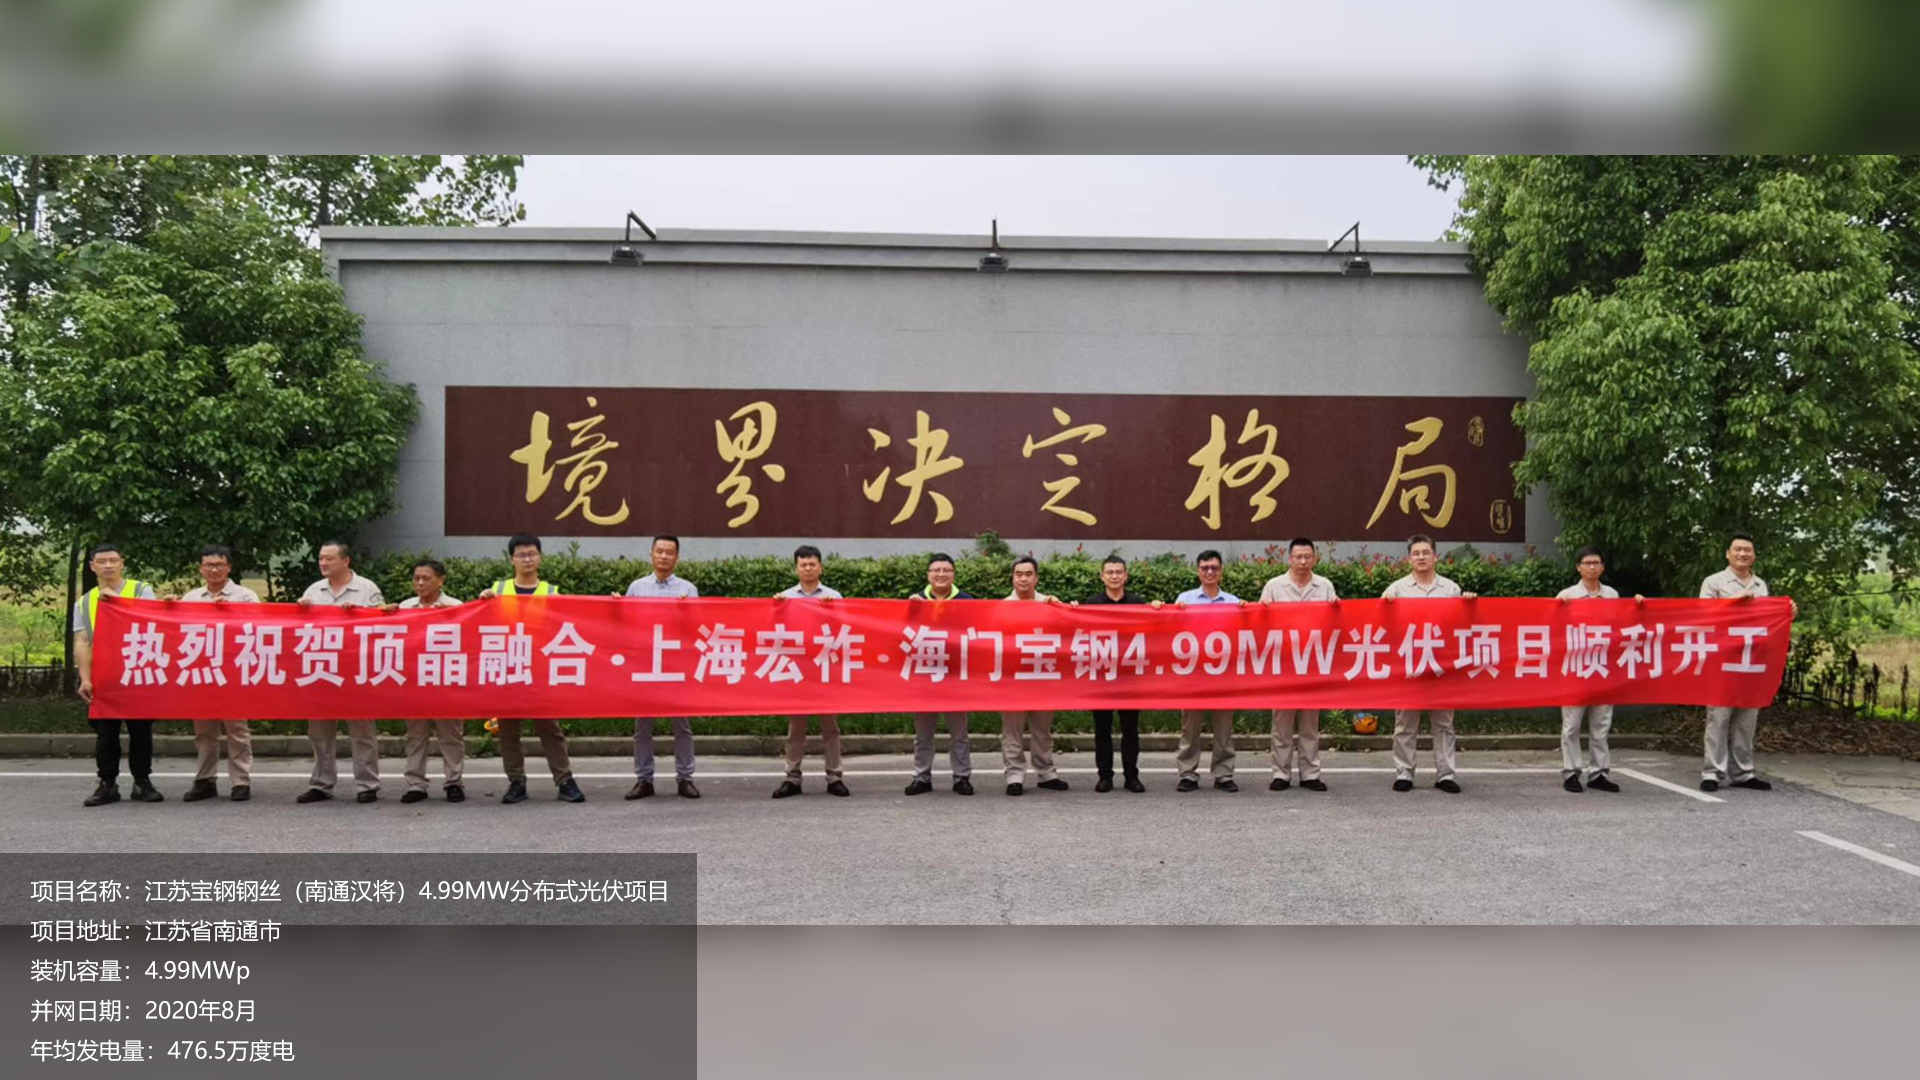 江苏宝钢钢丝项目总装机容量4.99MW，项目位于江苏省南通市，于2020年8月并网发电，年均发电量约200万度。